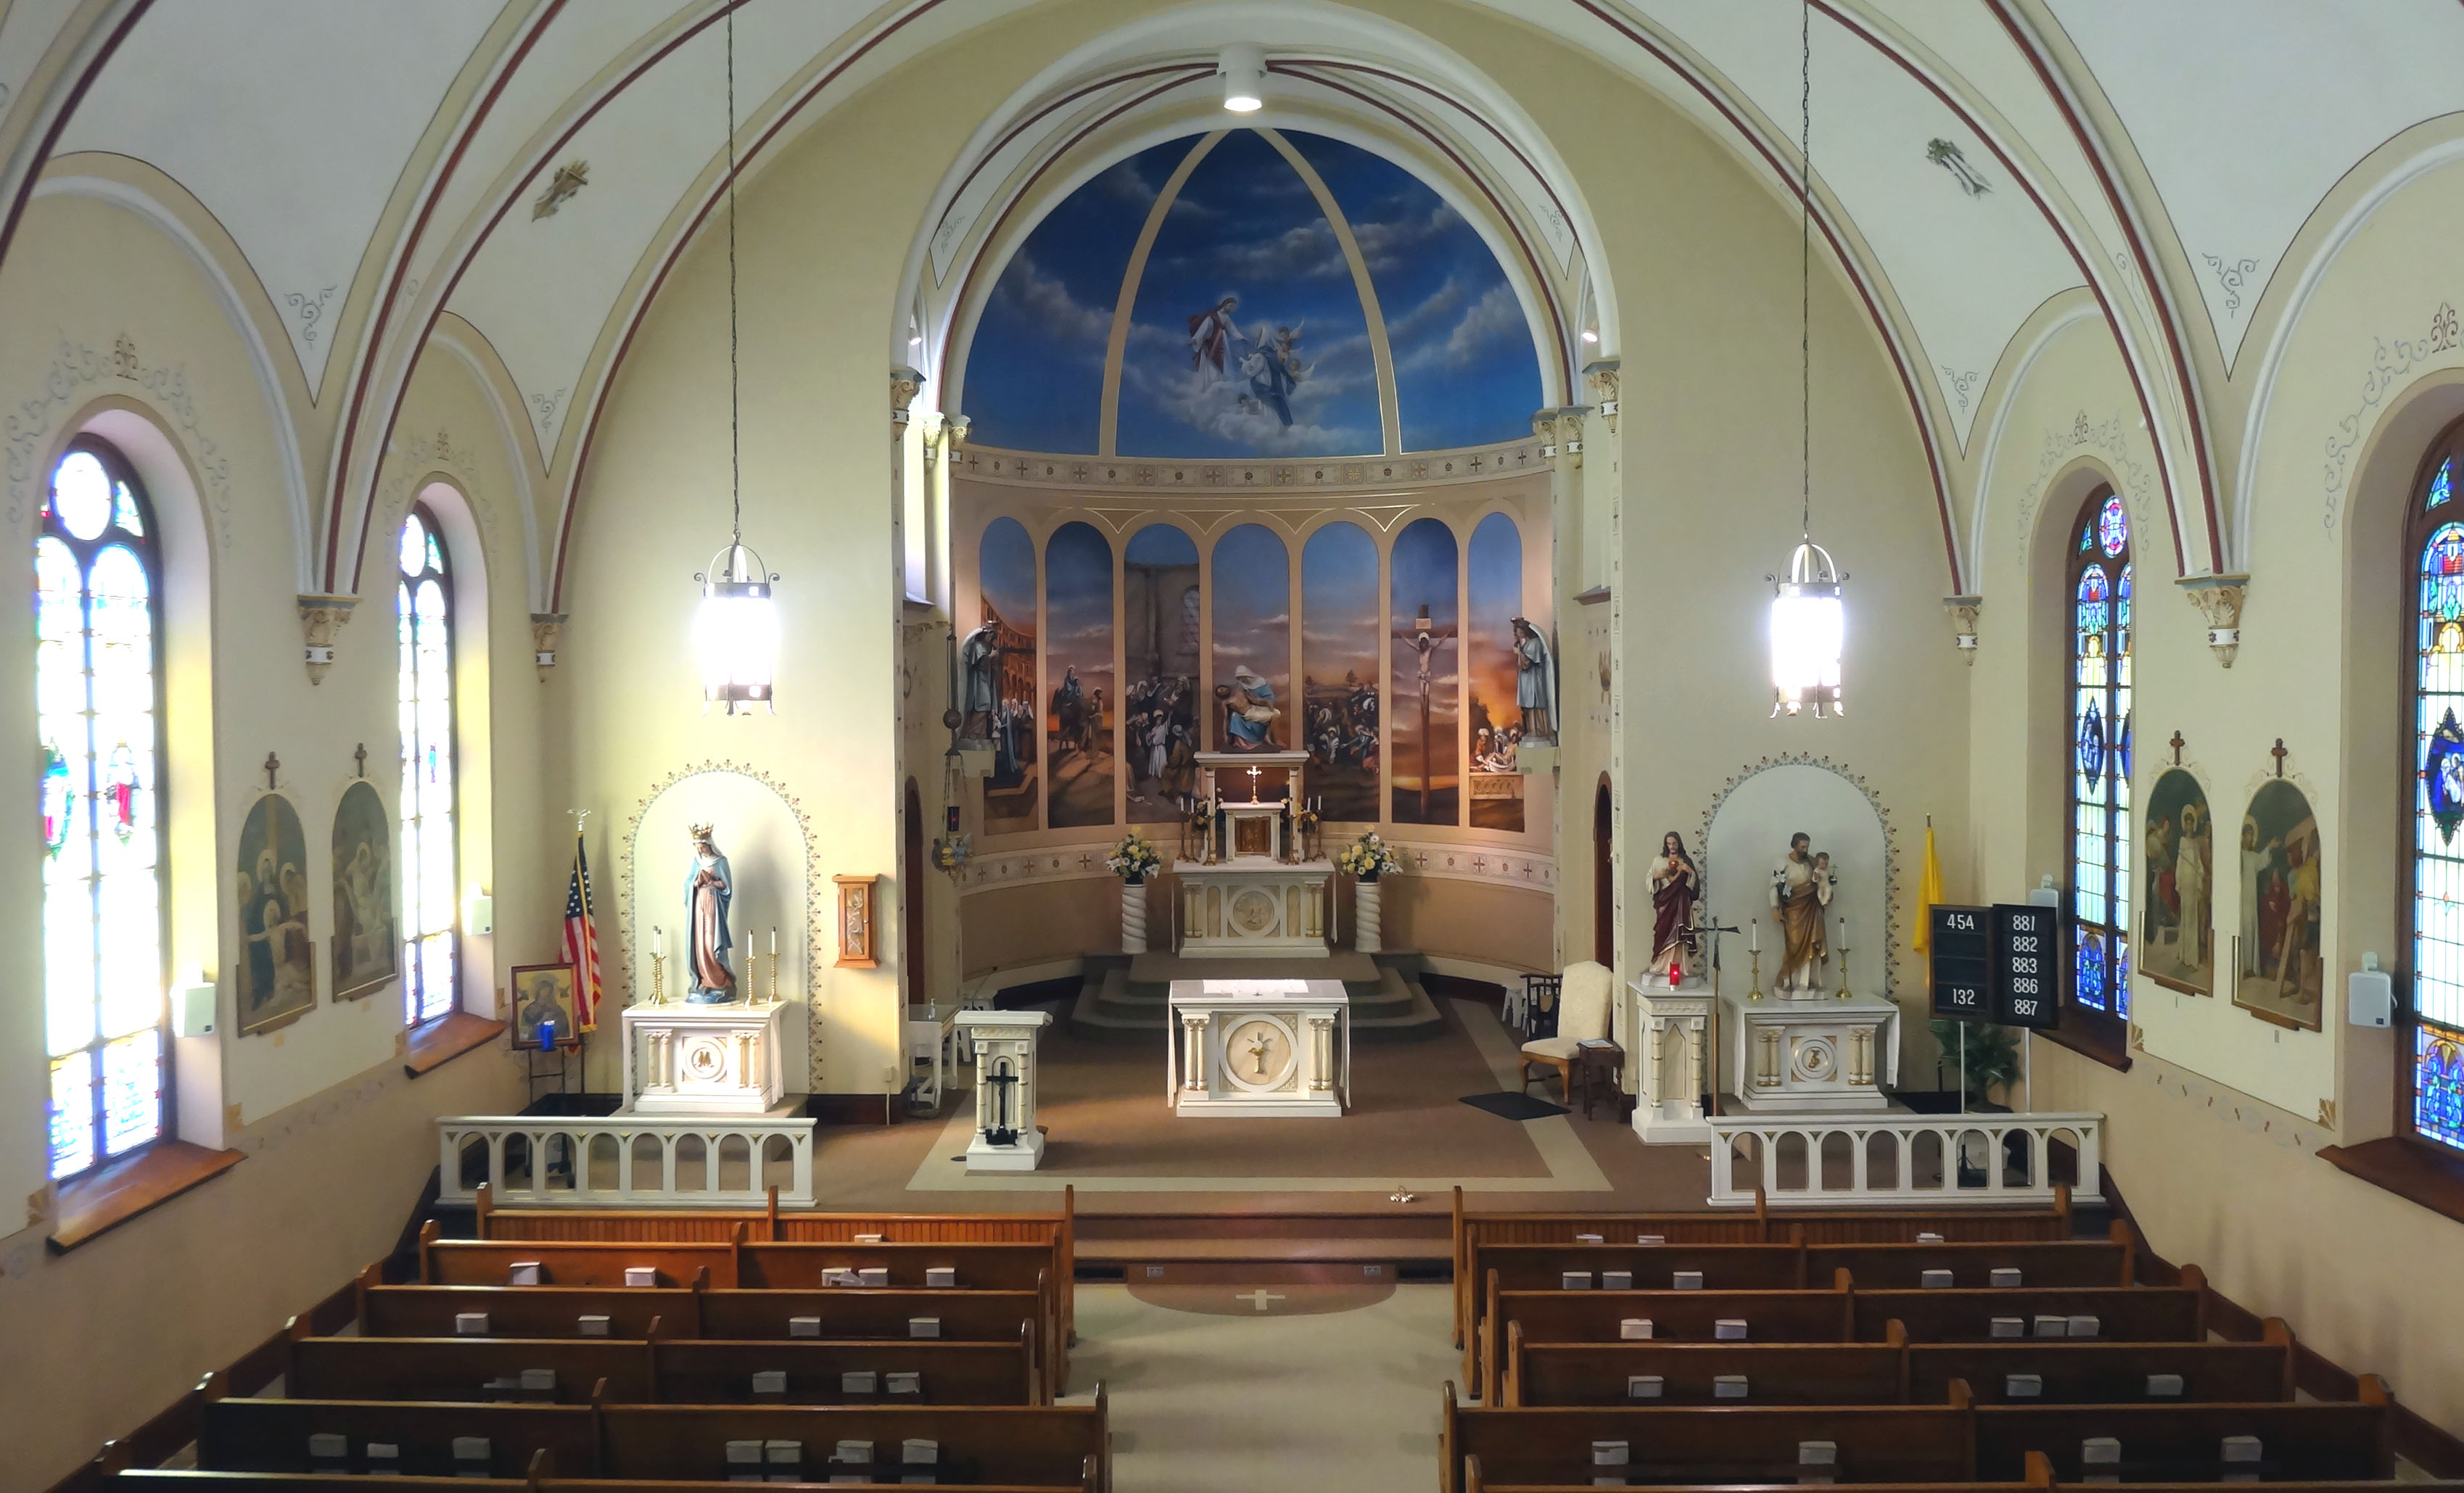 Catholic Church and Catholic School - Osmond, Nebraska